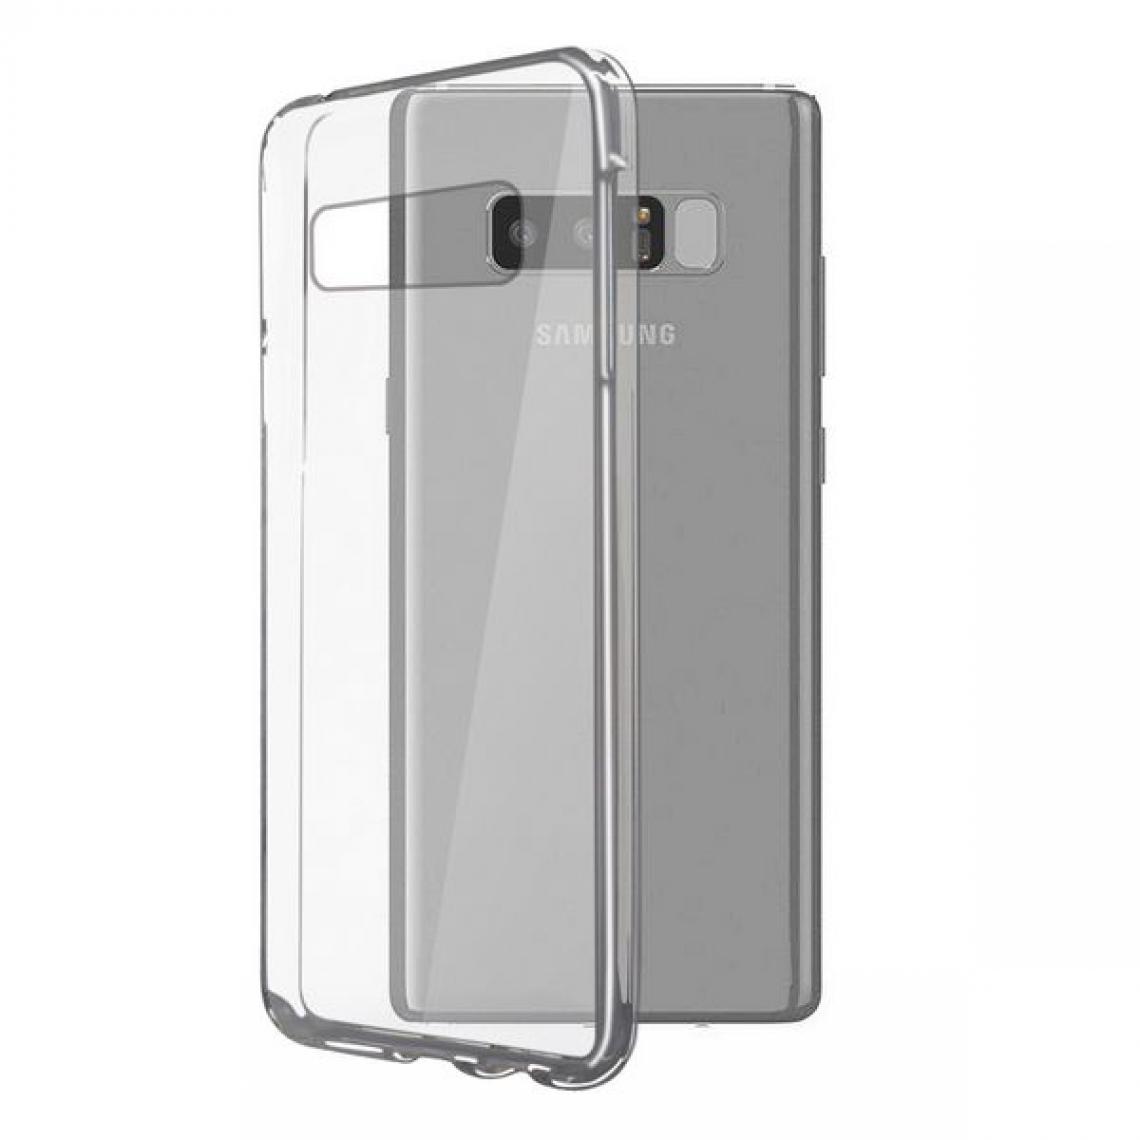 Uknow - Protection pour téléphone portable Samsung Galaxy Note 8 Flex TPU Transparent - Coque, étui smartphone